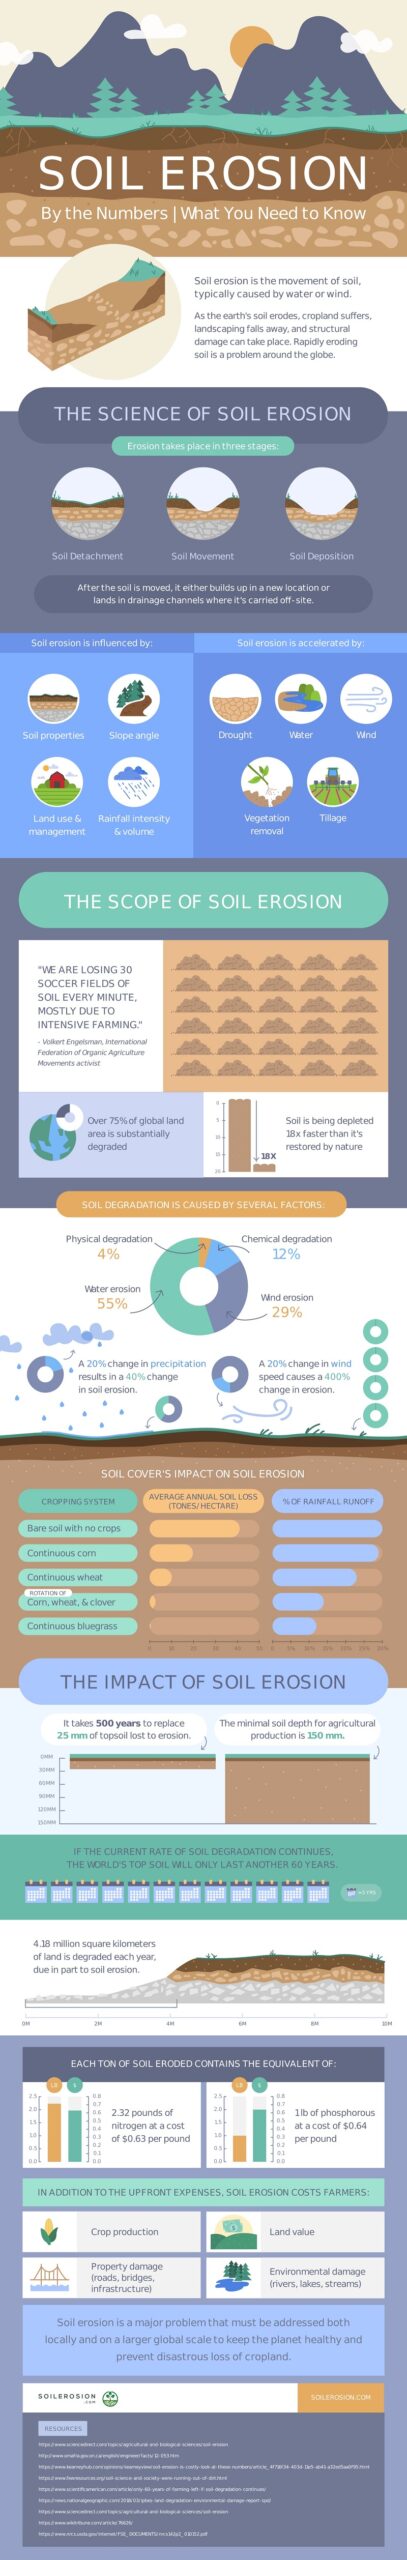 infographic on soil erosion